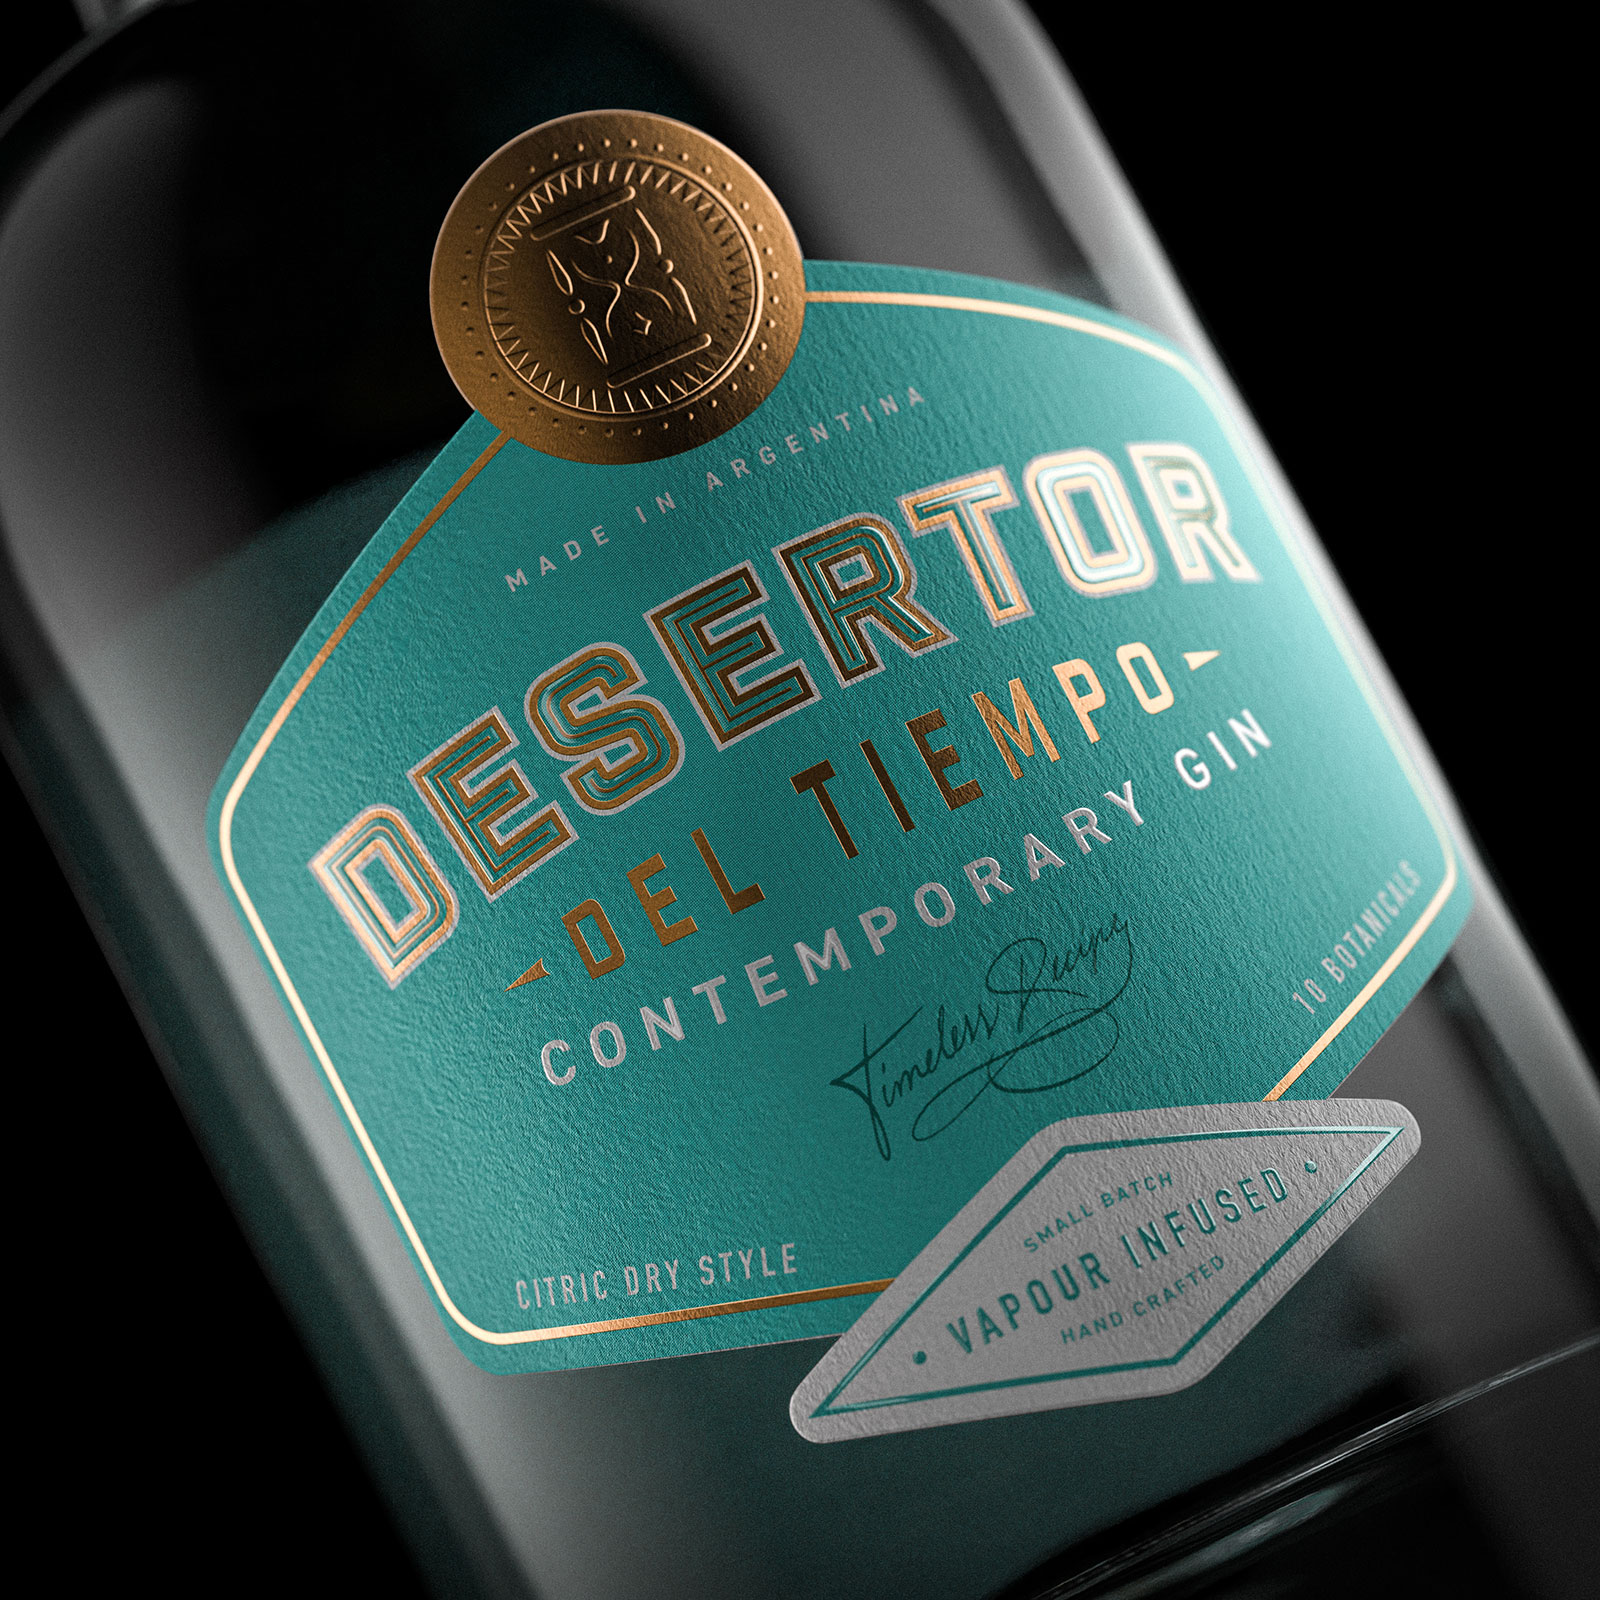 Tuerca Studio from Concept to Design of Desertor del Tiempo Gin